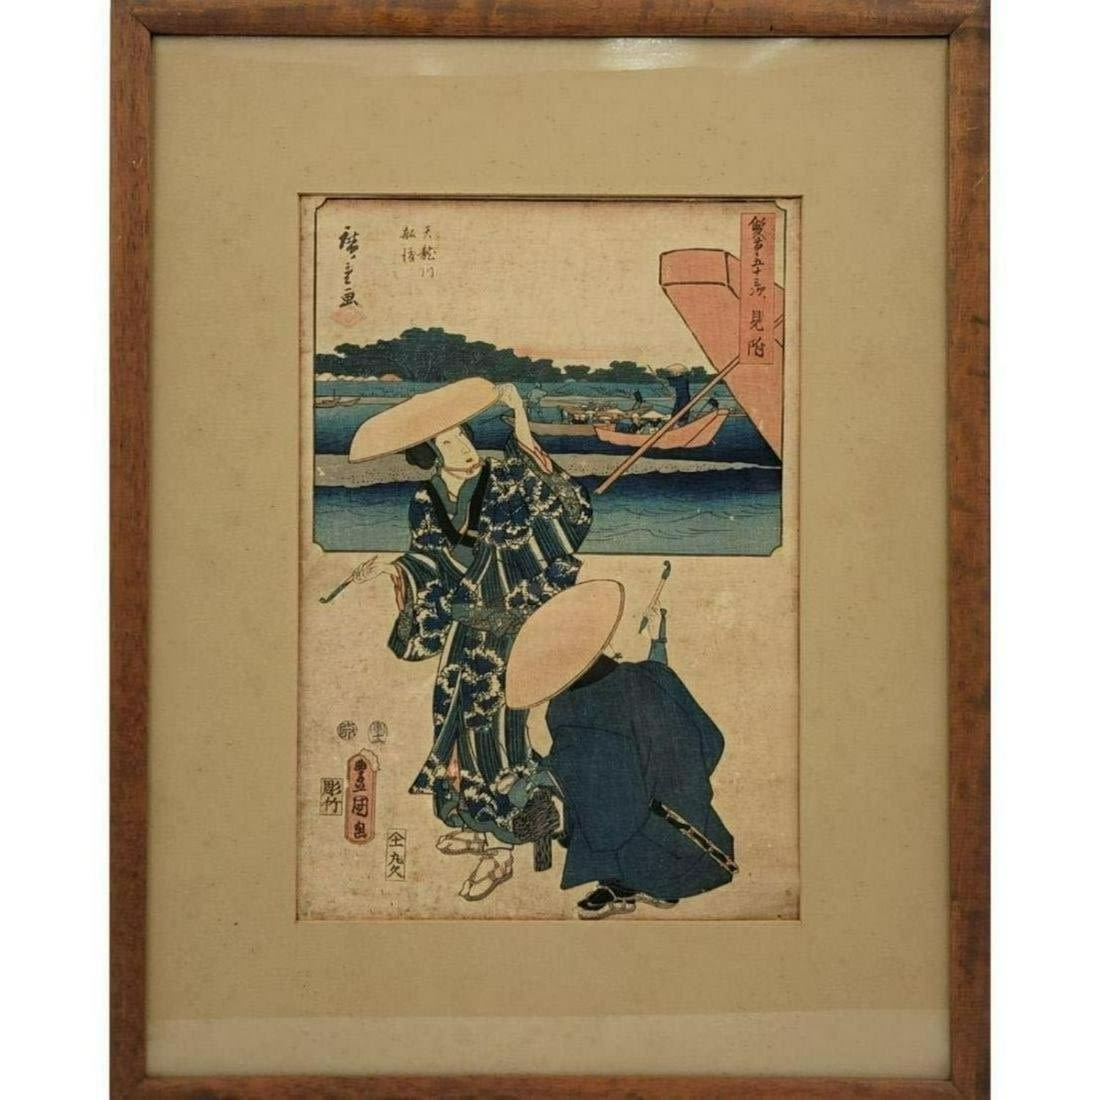 Untitled by Utagawa Hiroshige